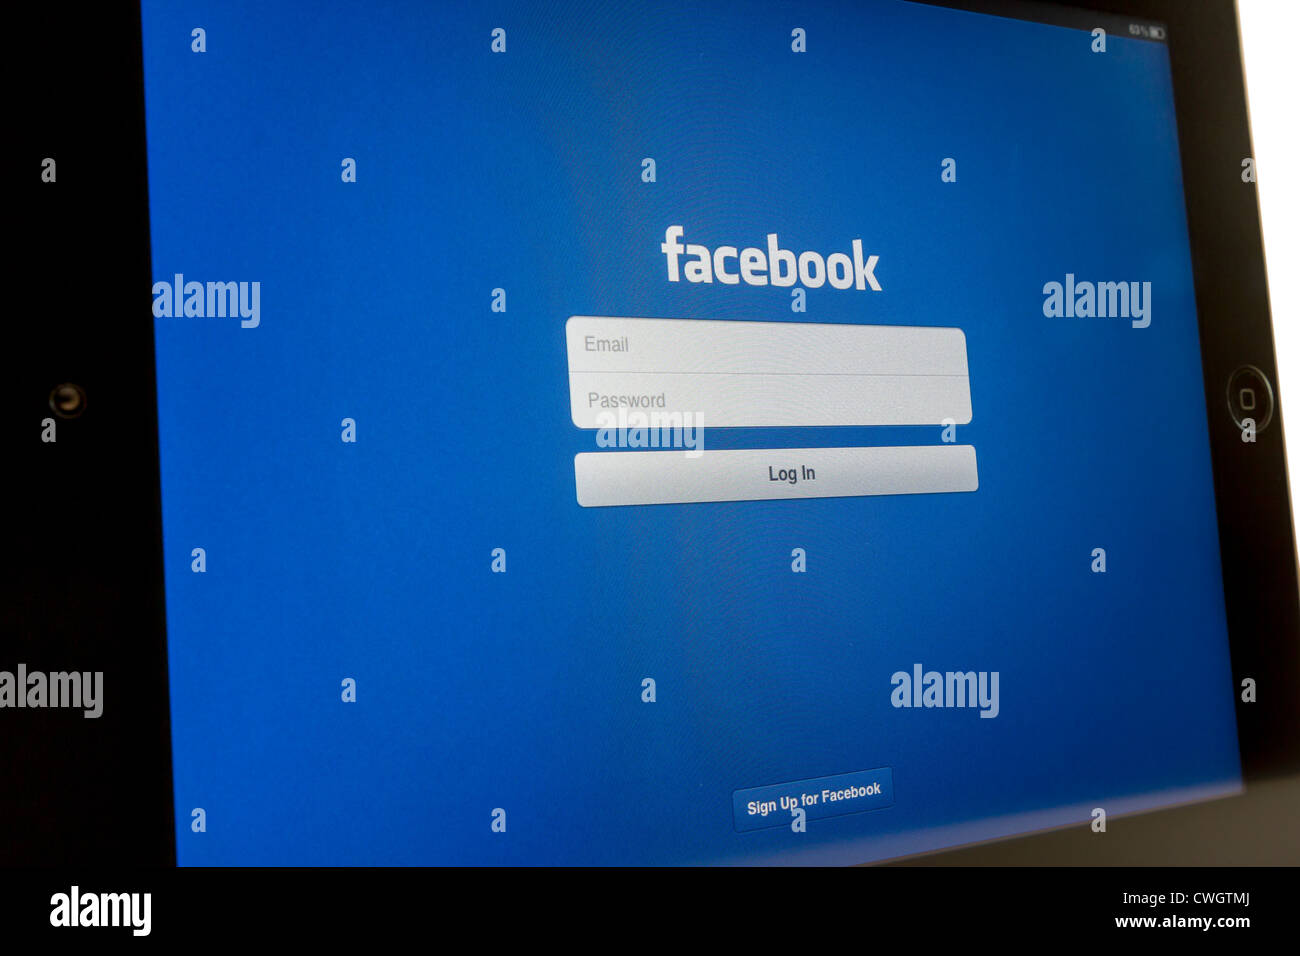 Facebook on iPad 3 Stock Photo